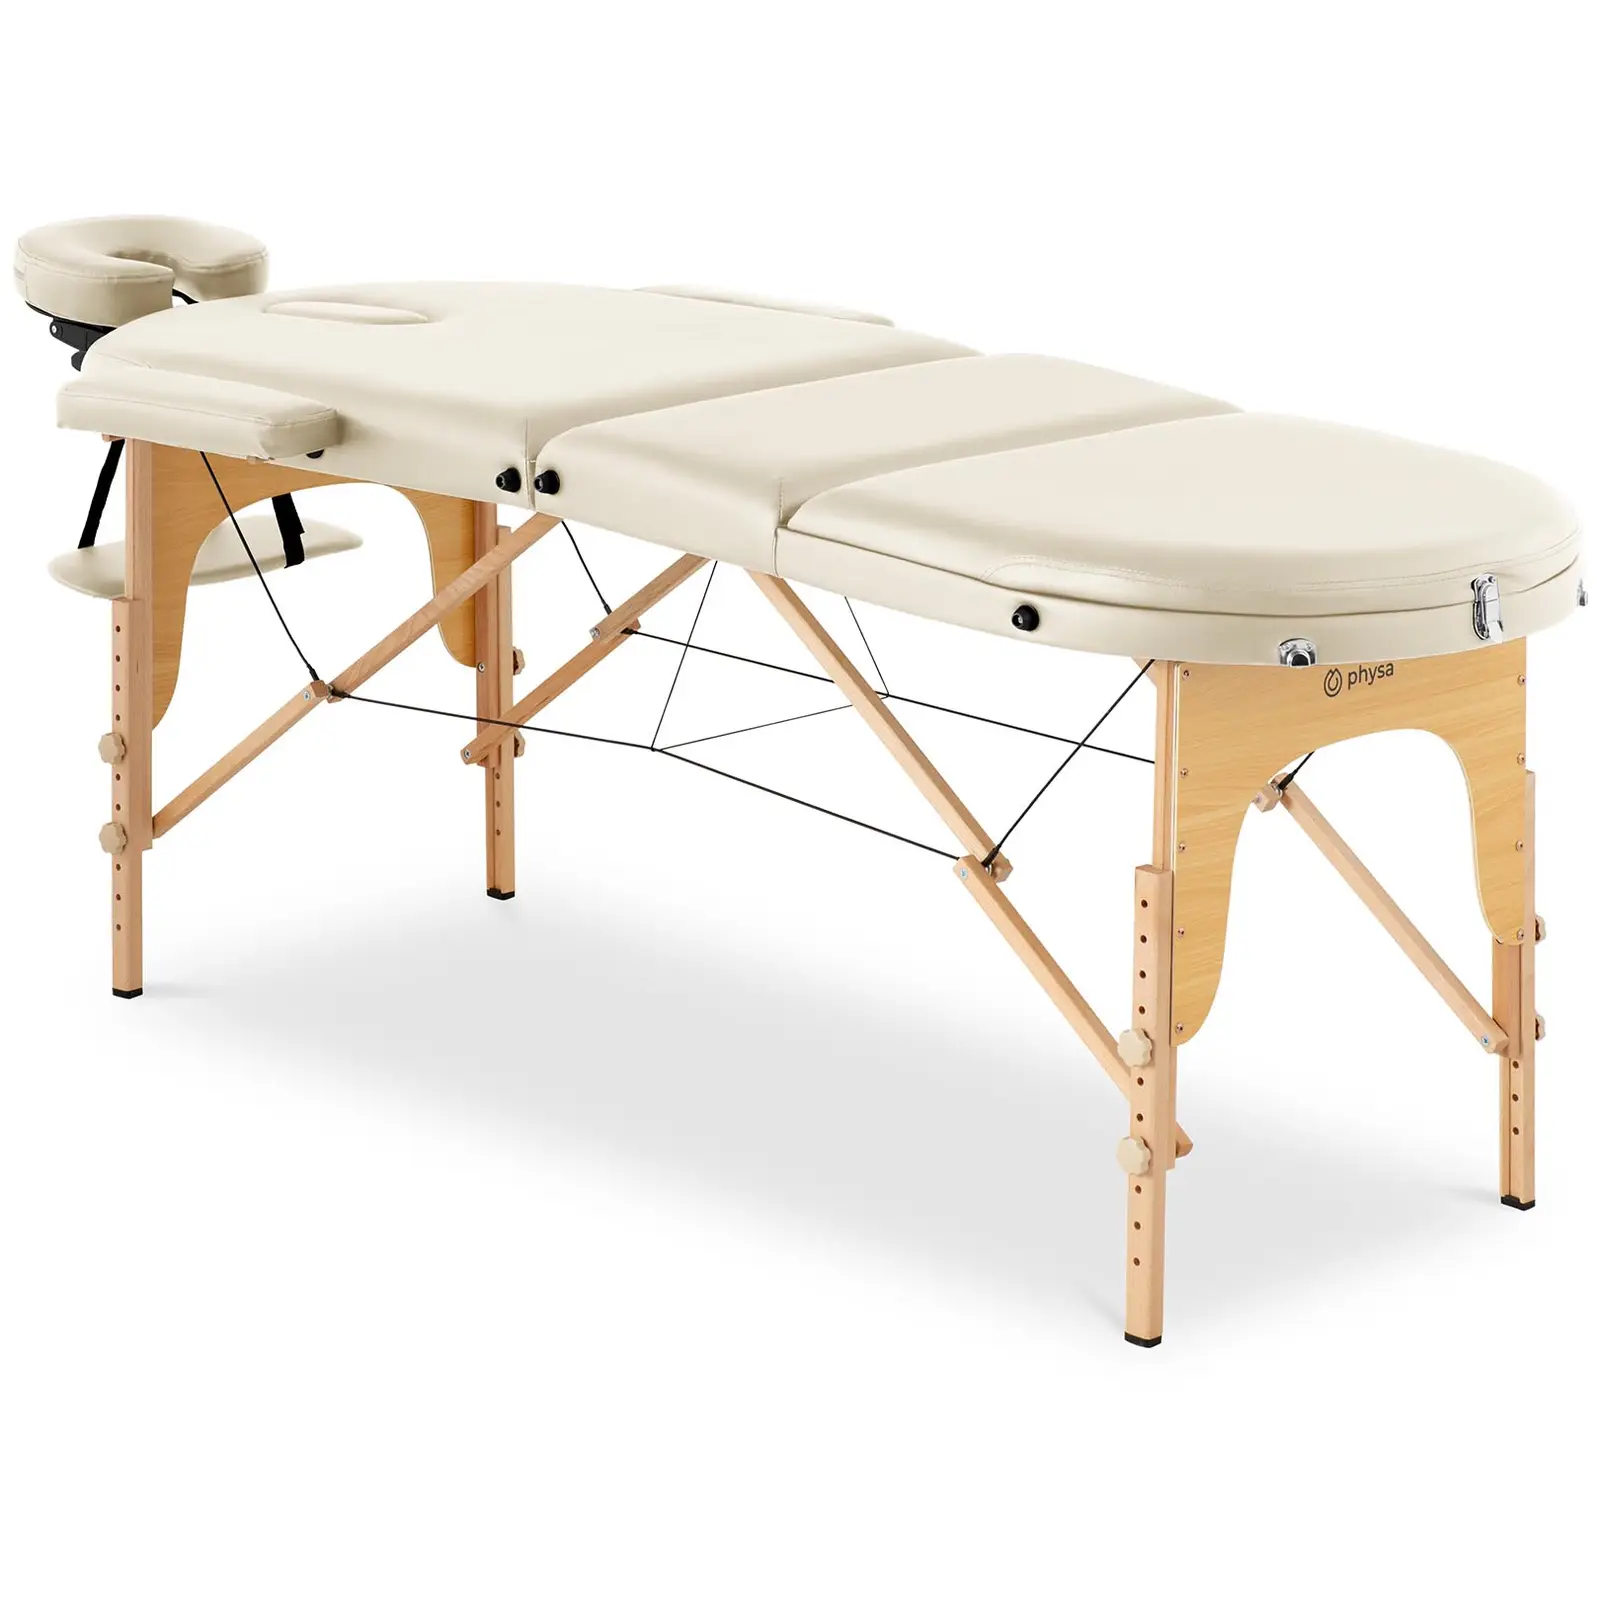 Lettino massaggio portatile - 185-211 x 70-88 x 63-85 cm - 227 kg - Beige